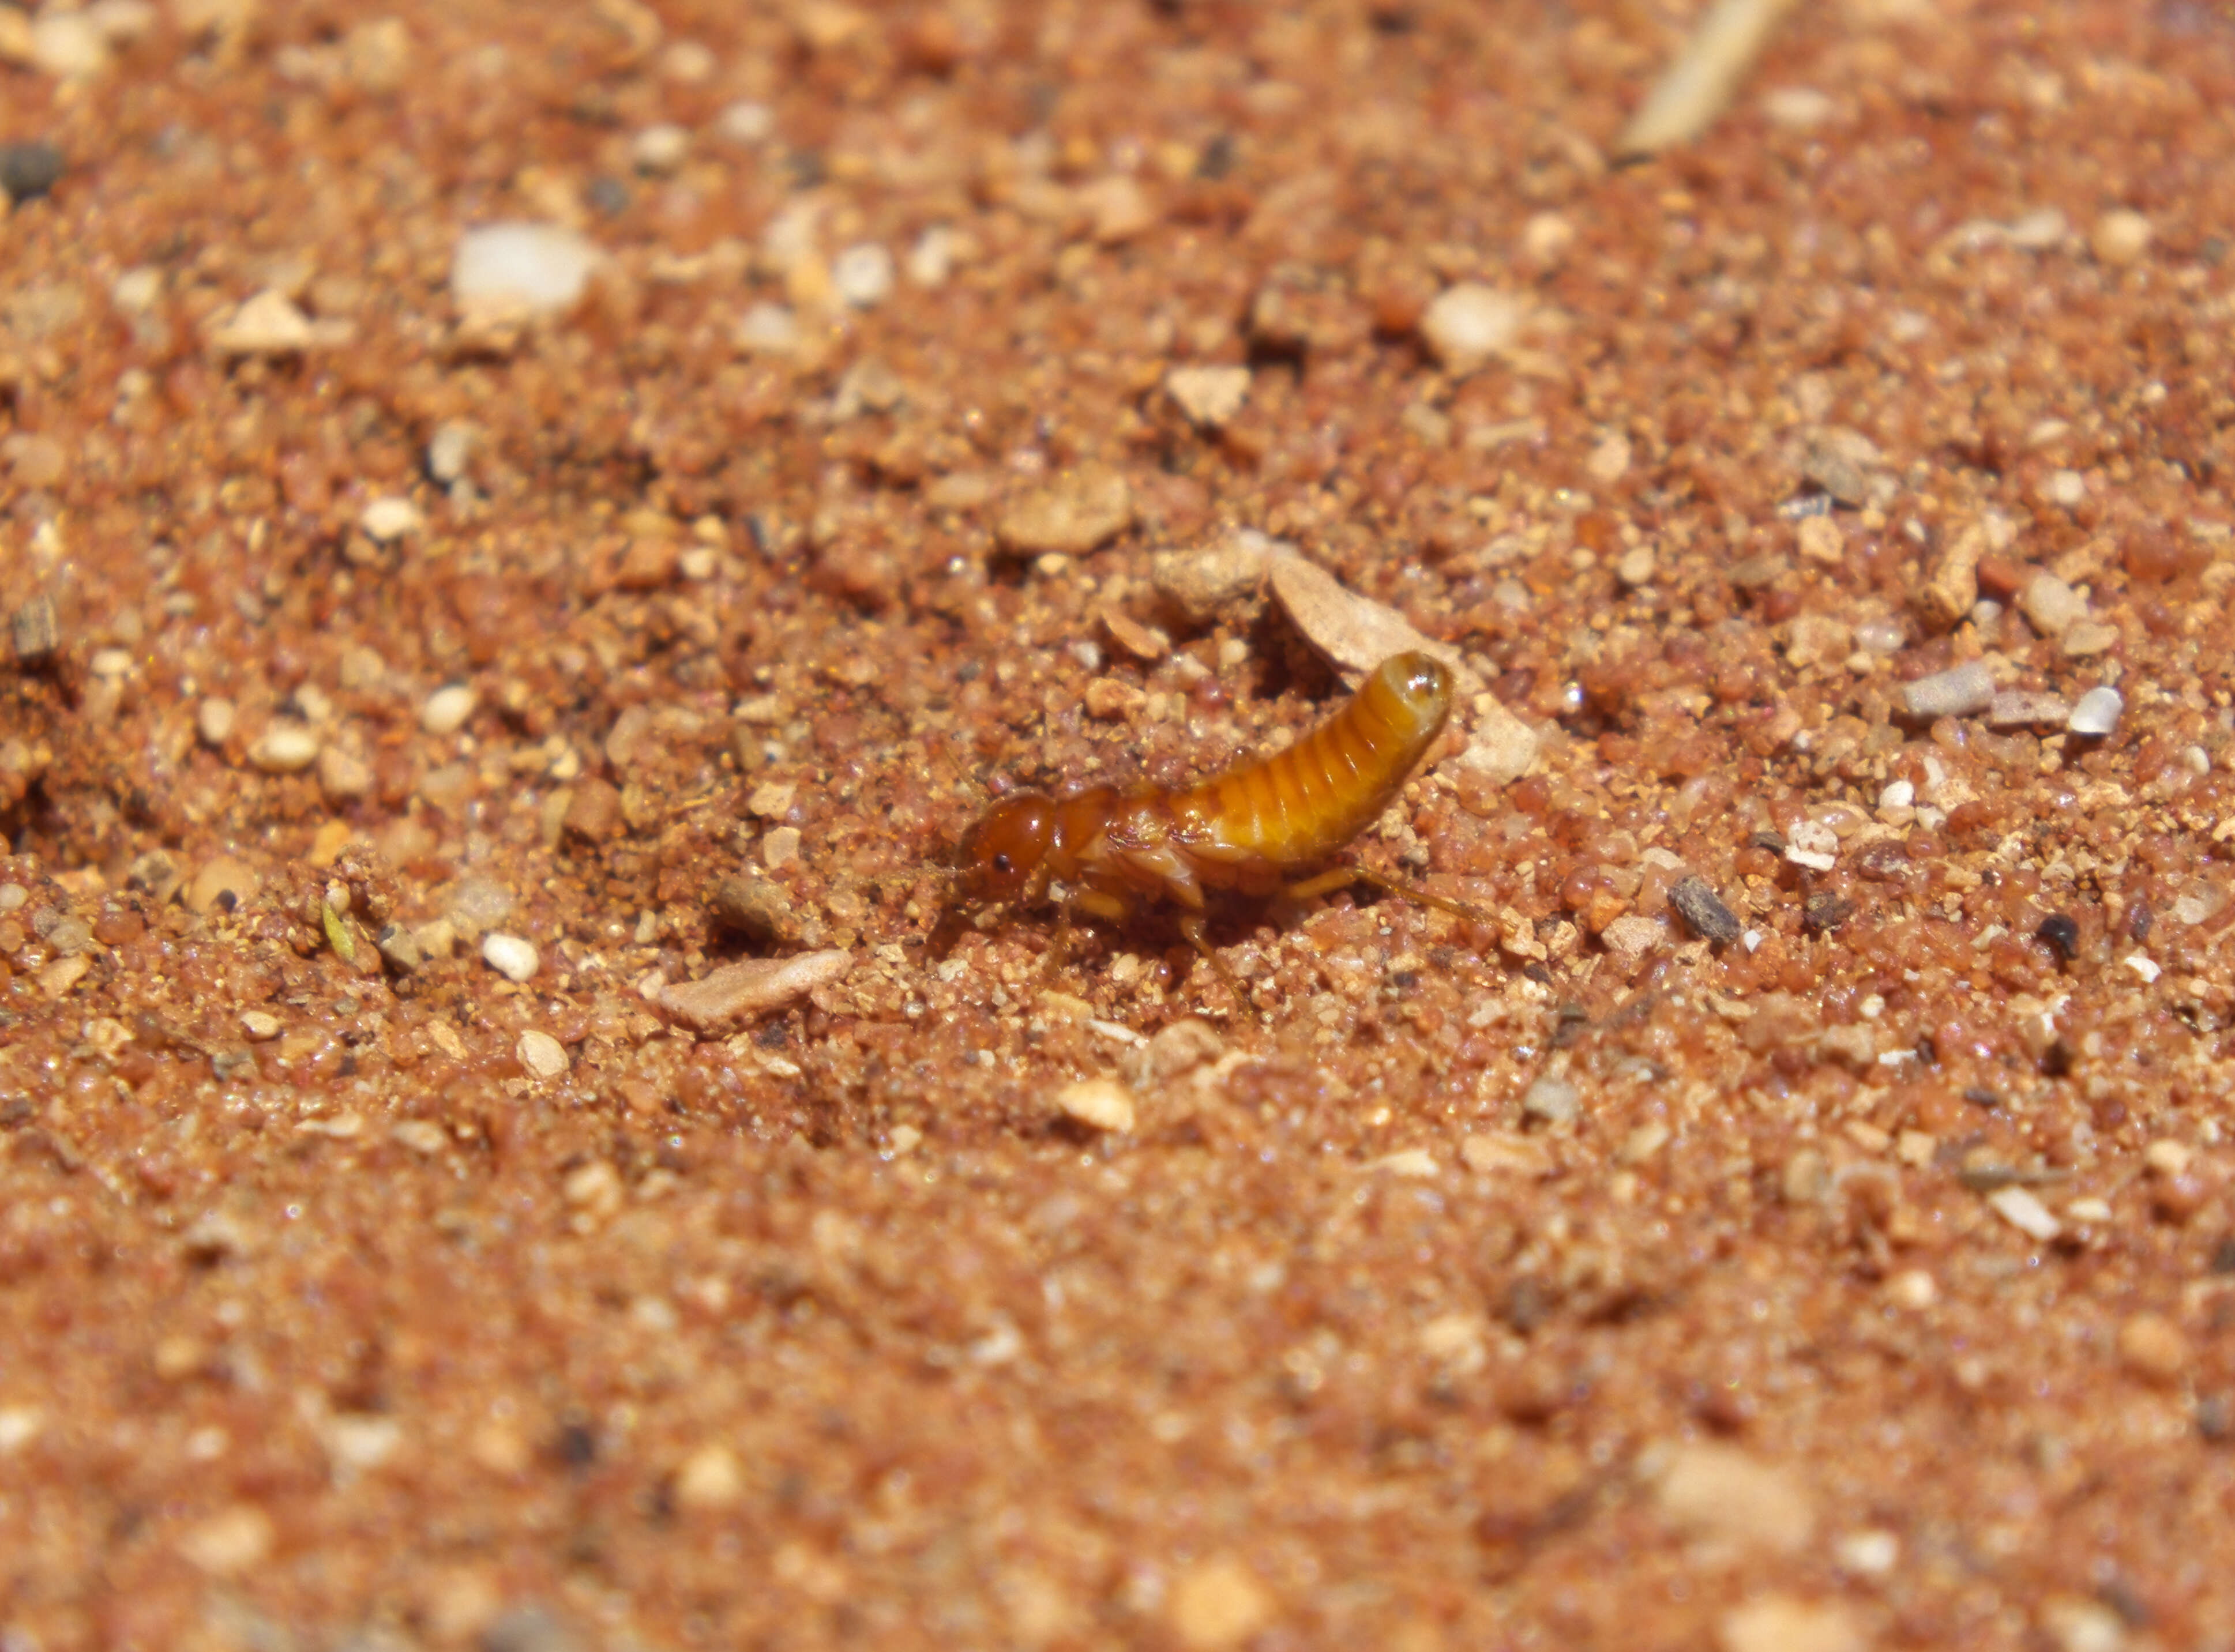 Image of Rhinotermitidae